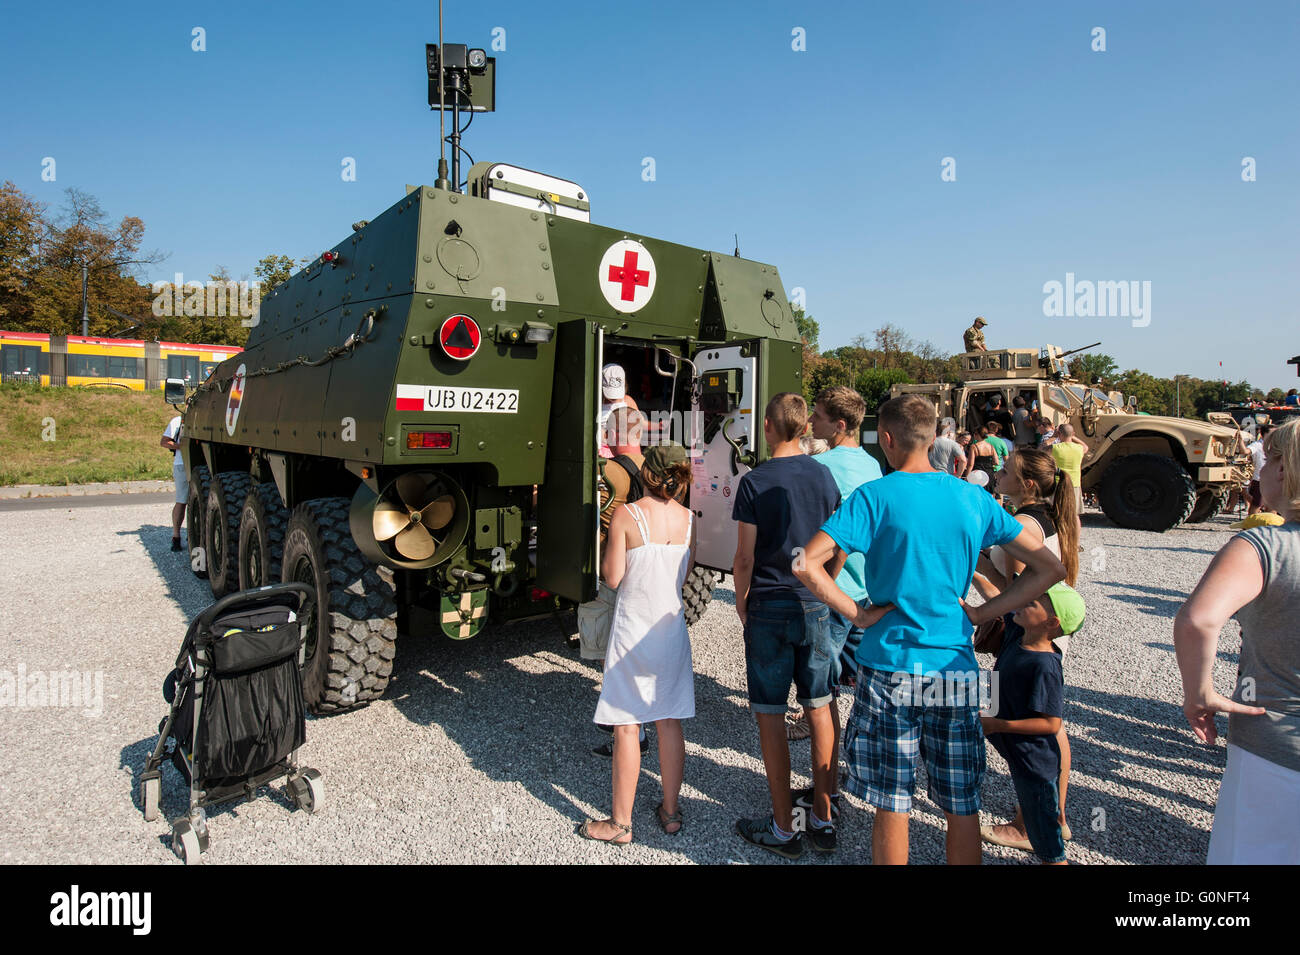 Visualizzazione delle attrezzature militari e armi per il pubblico in generale a Varsavia in Polonia all'aperto accanto alla Stadio Nazionale. Foto Stock